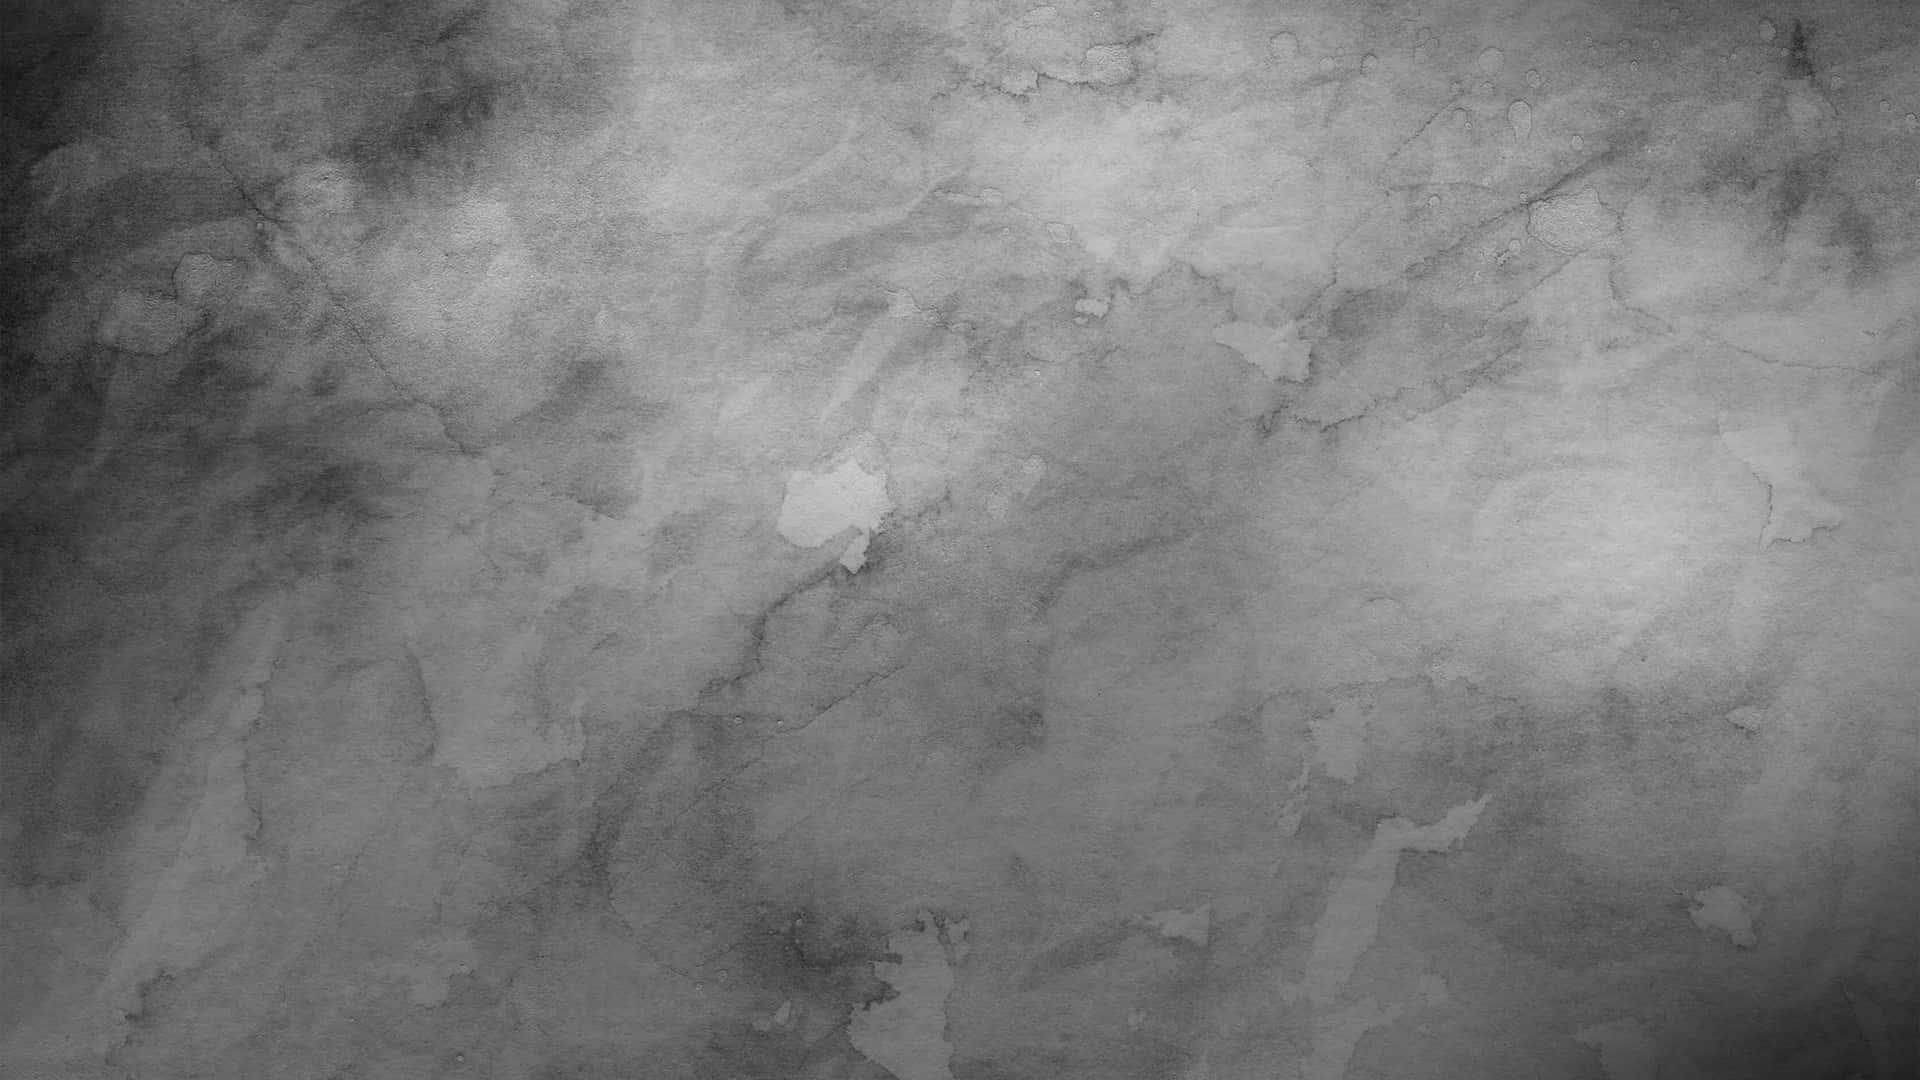 Unafotografia In Bianco E Nero Di Un Muro Di Cemento